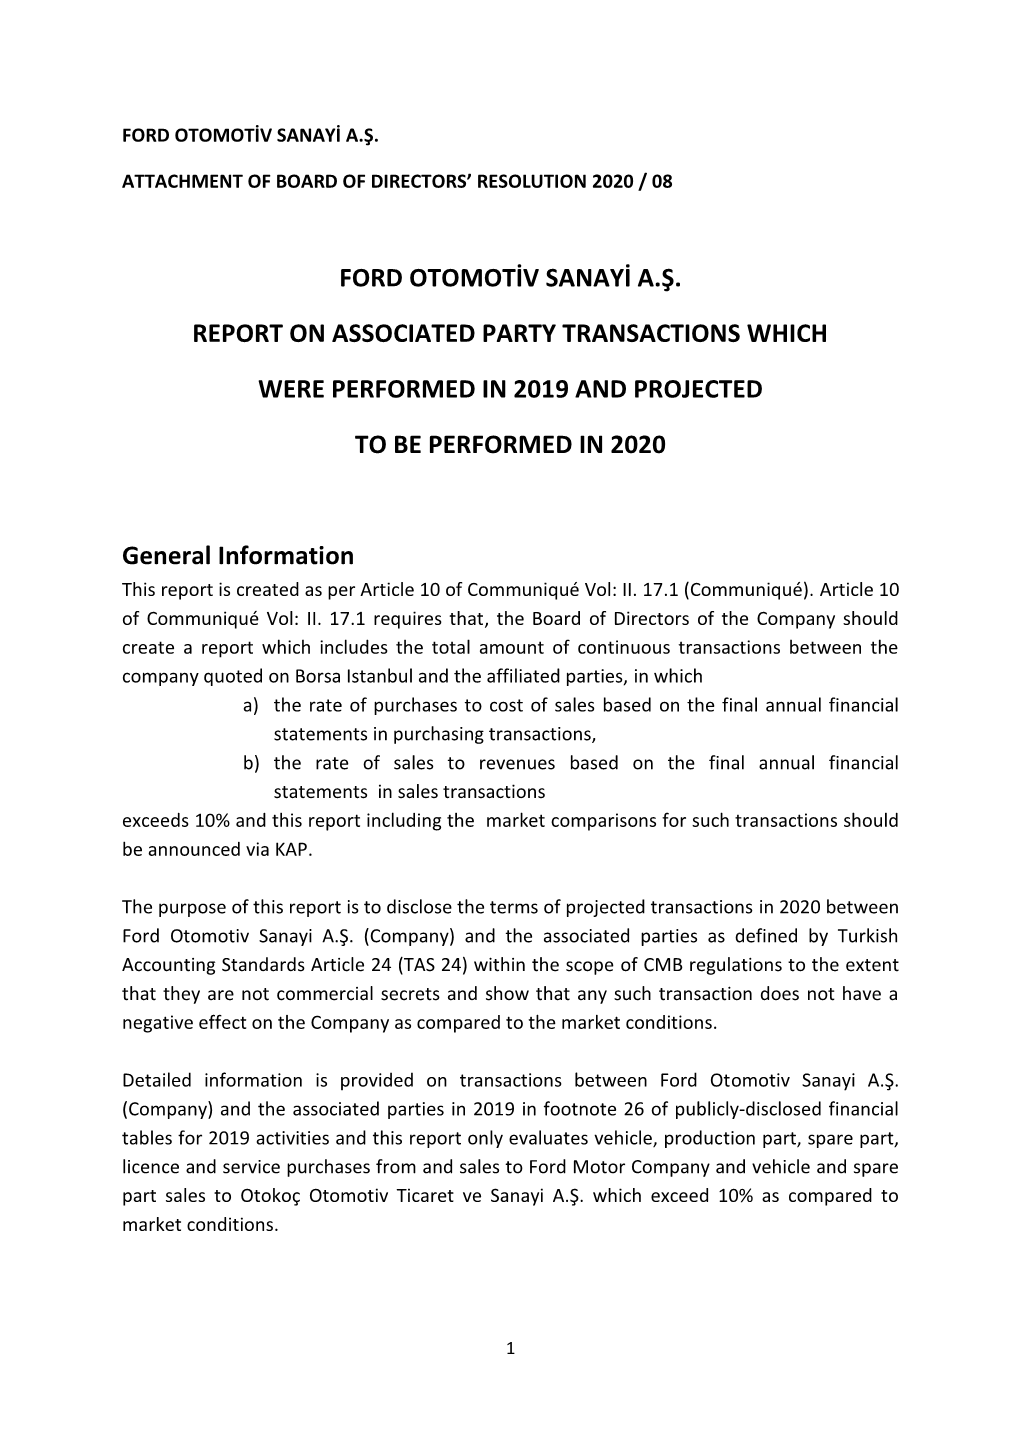 Ford Otomotiv Sanayi A.Ş. Report on Associated Party